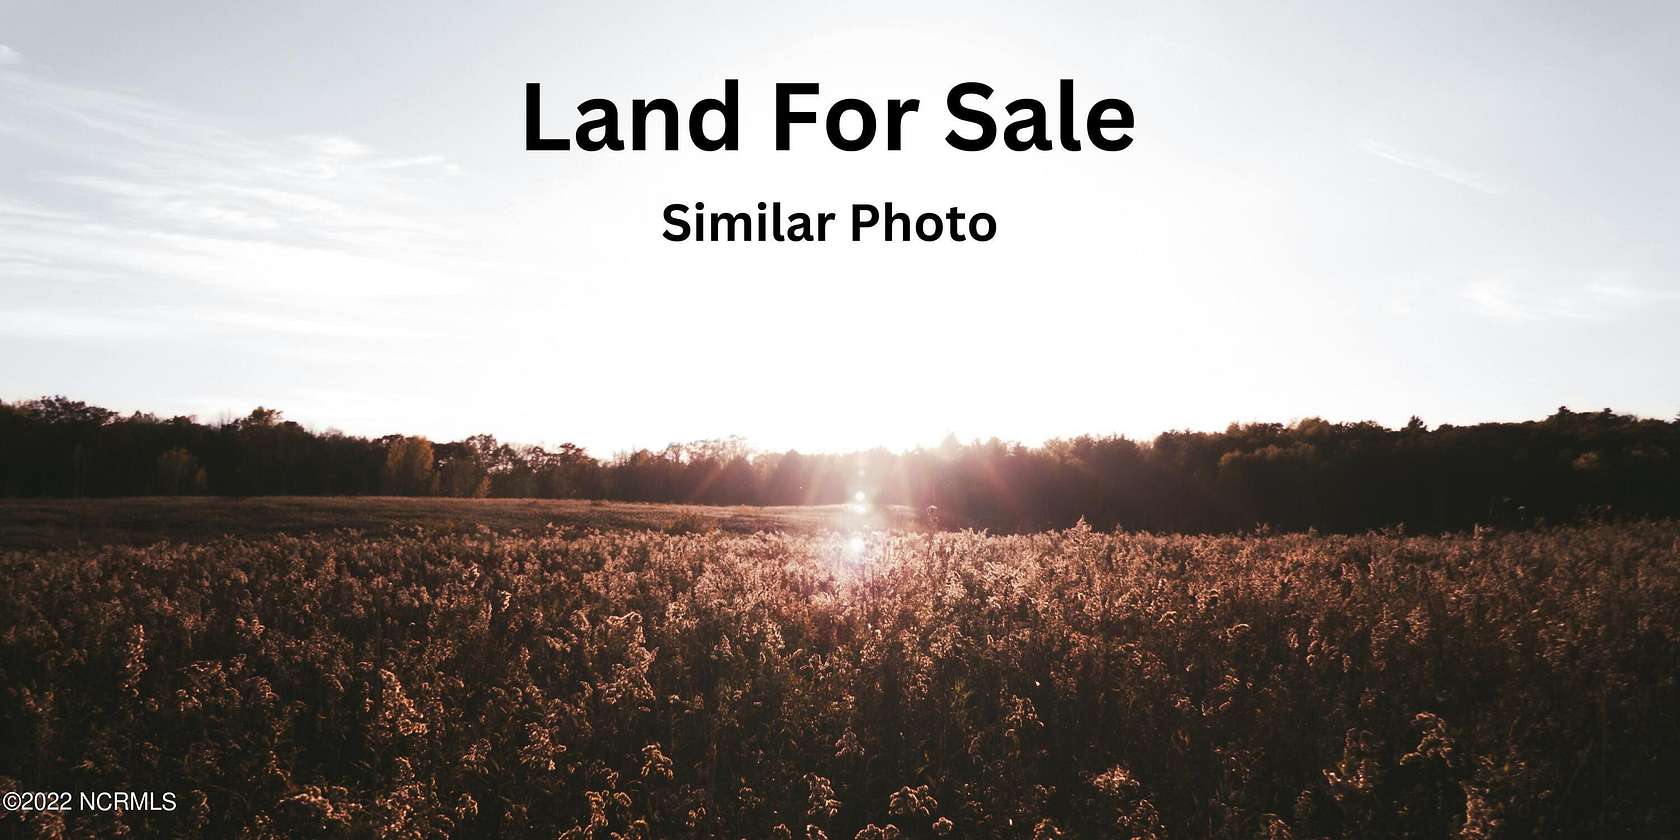 5.5 Acres of Agricultural Land for Sale in Elizabeth City, North Carolina